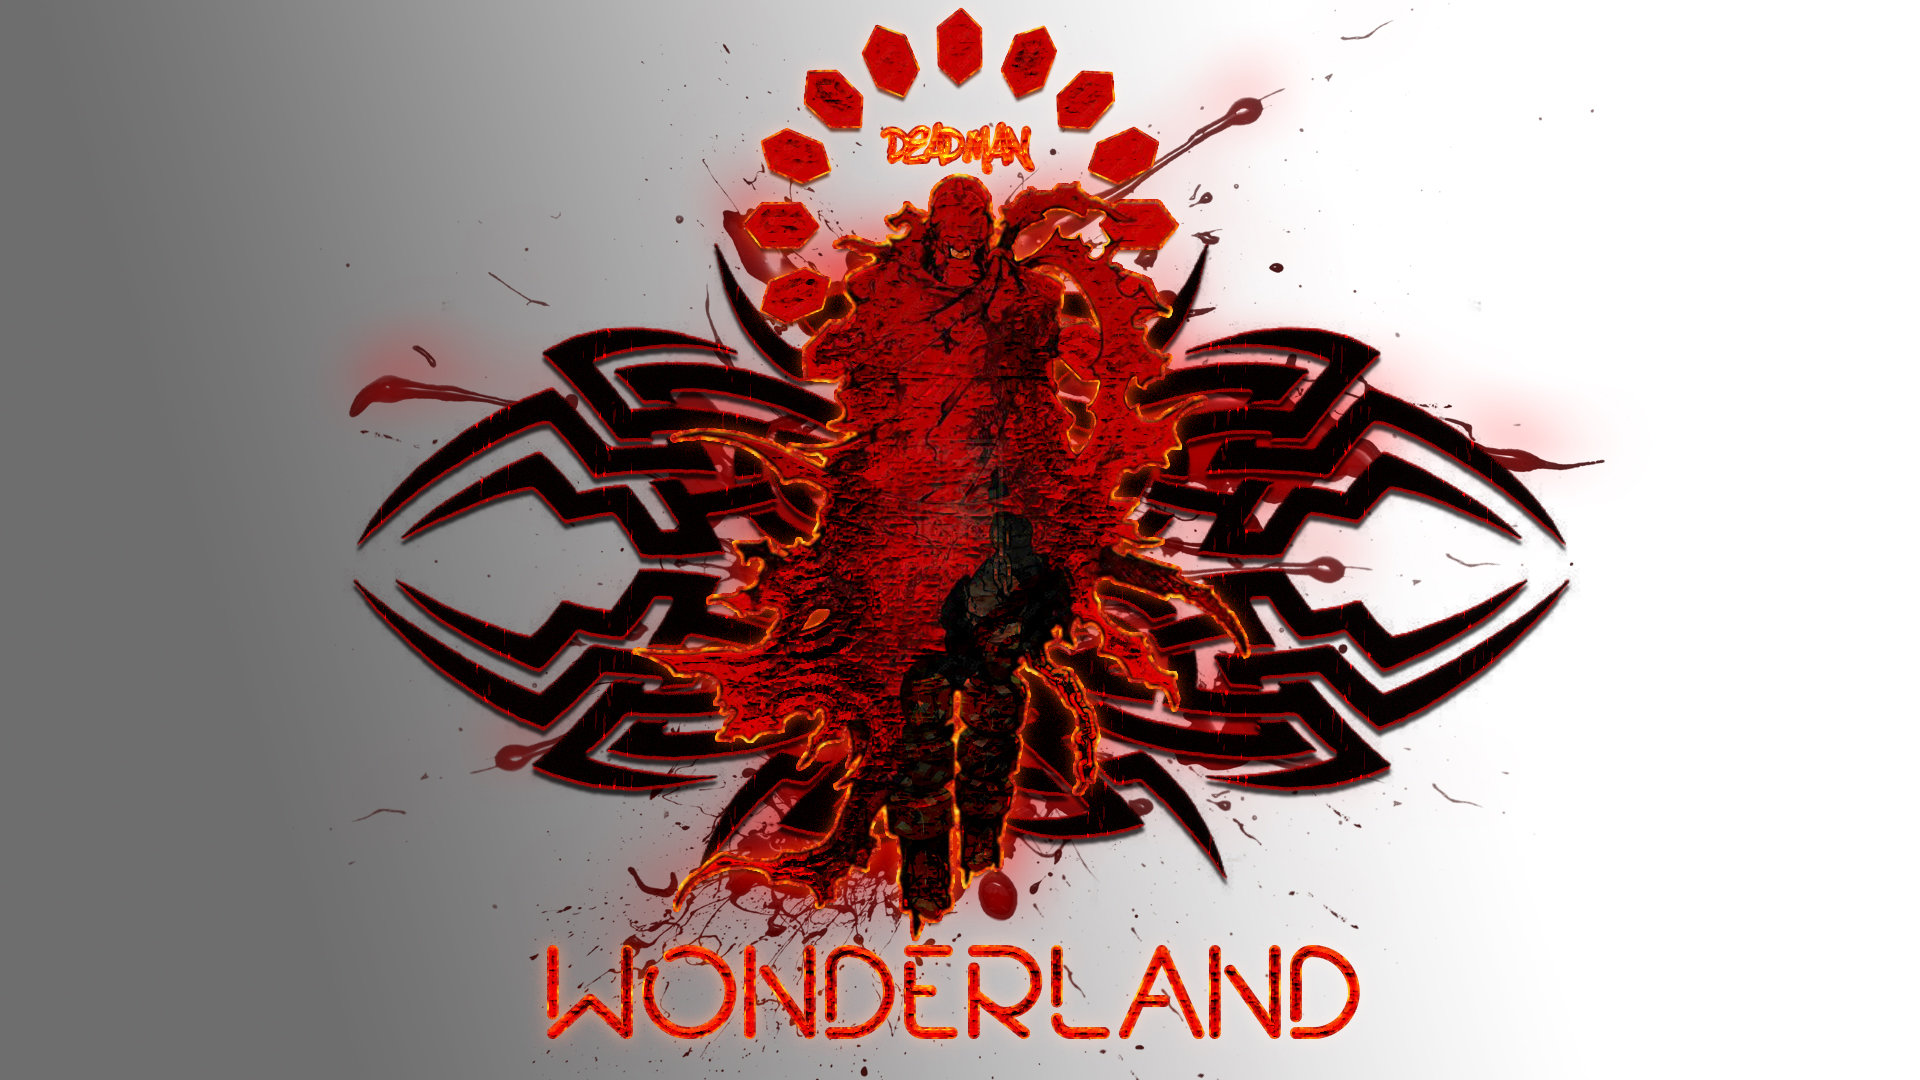 Download full hd 1920x1080 Deadman Wonderland PC wallpaper ID:192073 for free